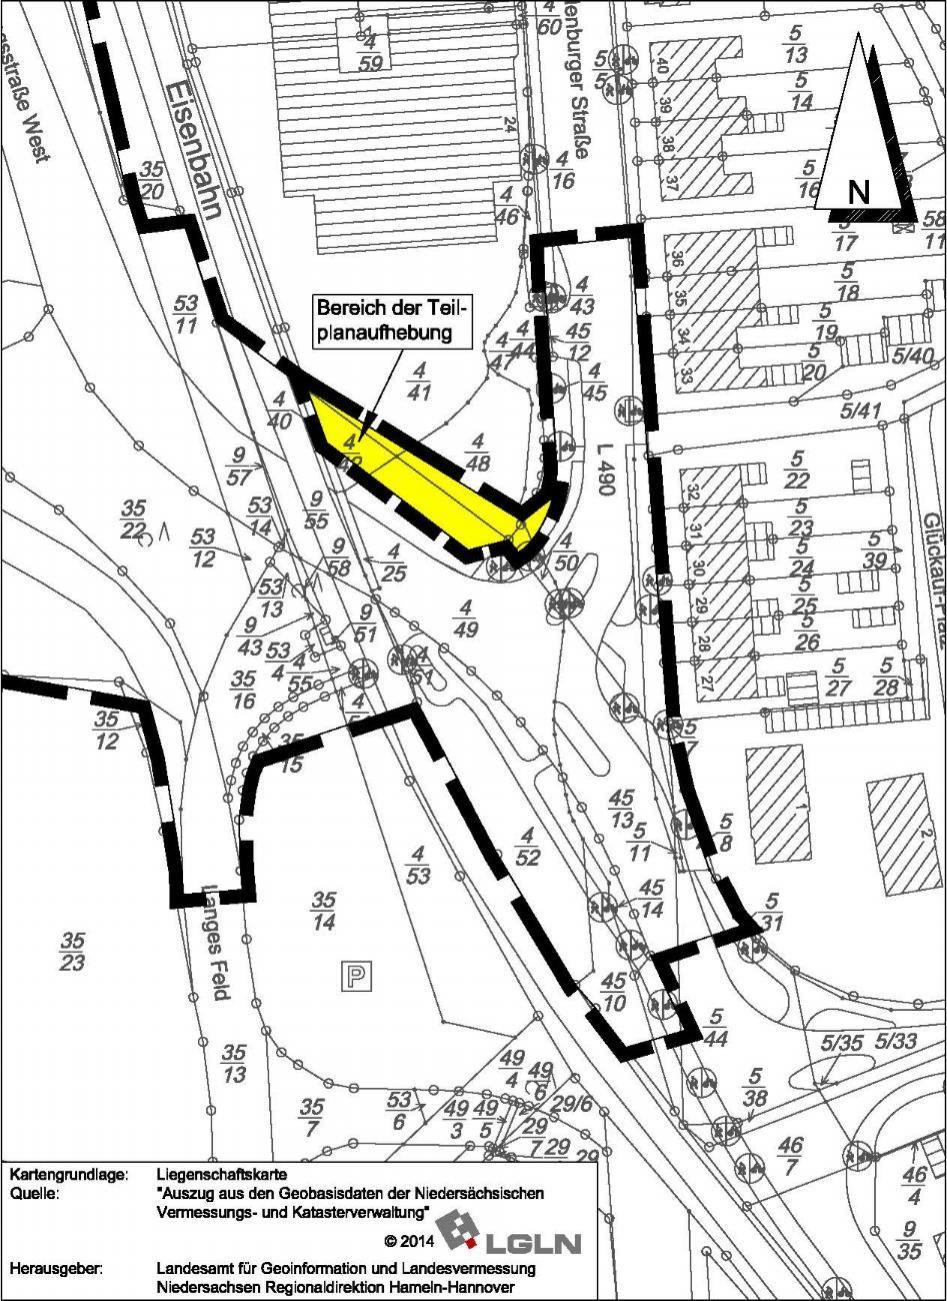 - 2 - Bebauungsplan Nr. 47 Entlastungsstraße Bad Salzdetfurth - West, Teilplanaufhebung M 1 : 1.000 Gesetzesbezüge Baugesetzbuch (BauGB) vom 23.9.2004 (BGBl. I Seite 2414) - zuletzt geändert am 20.11.